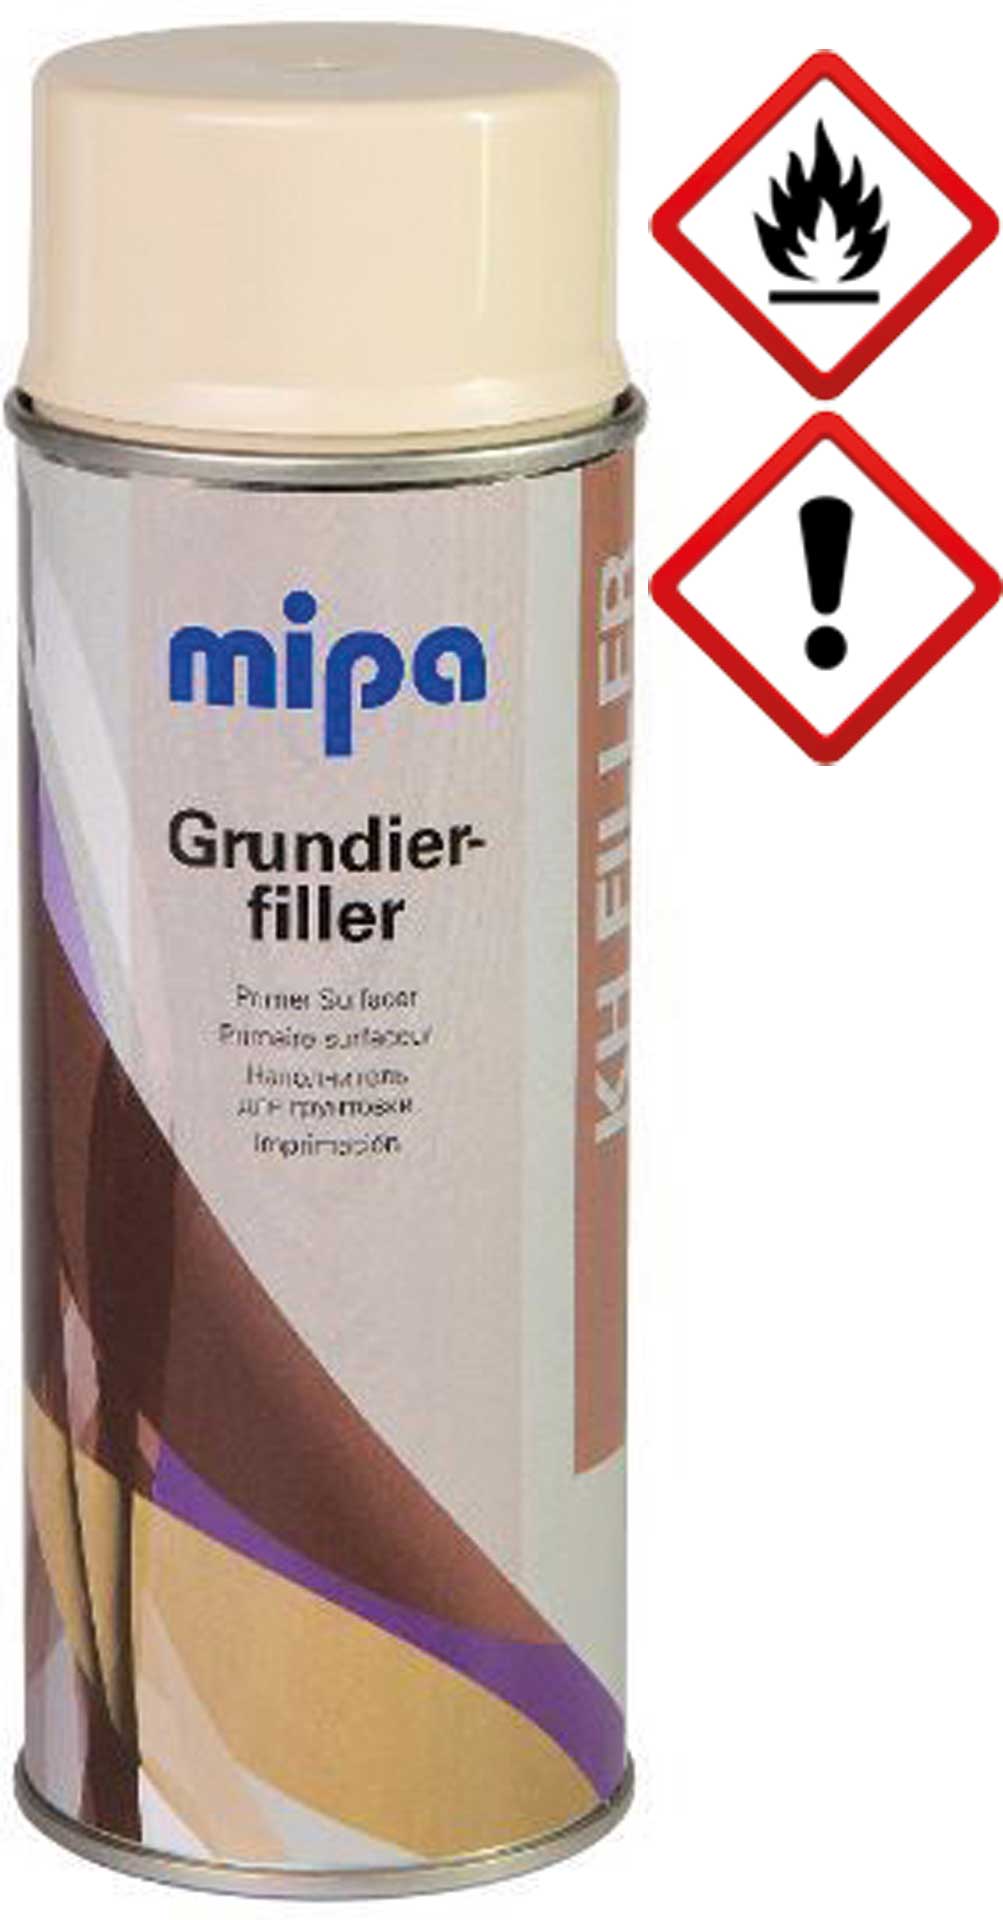 mipa Grundierfiller-Spray 400ml Farbe beige - gelblich